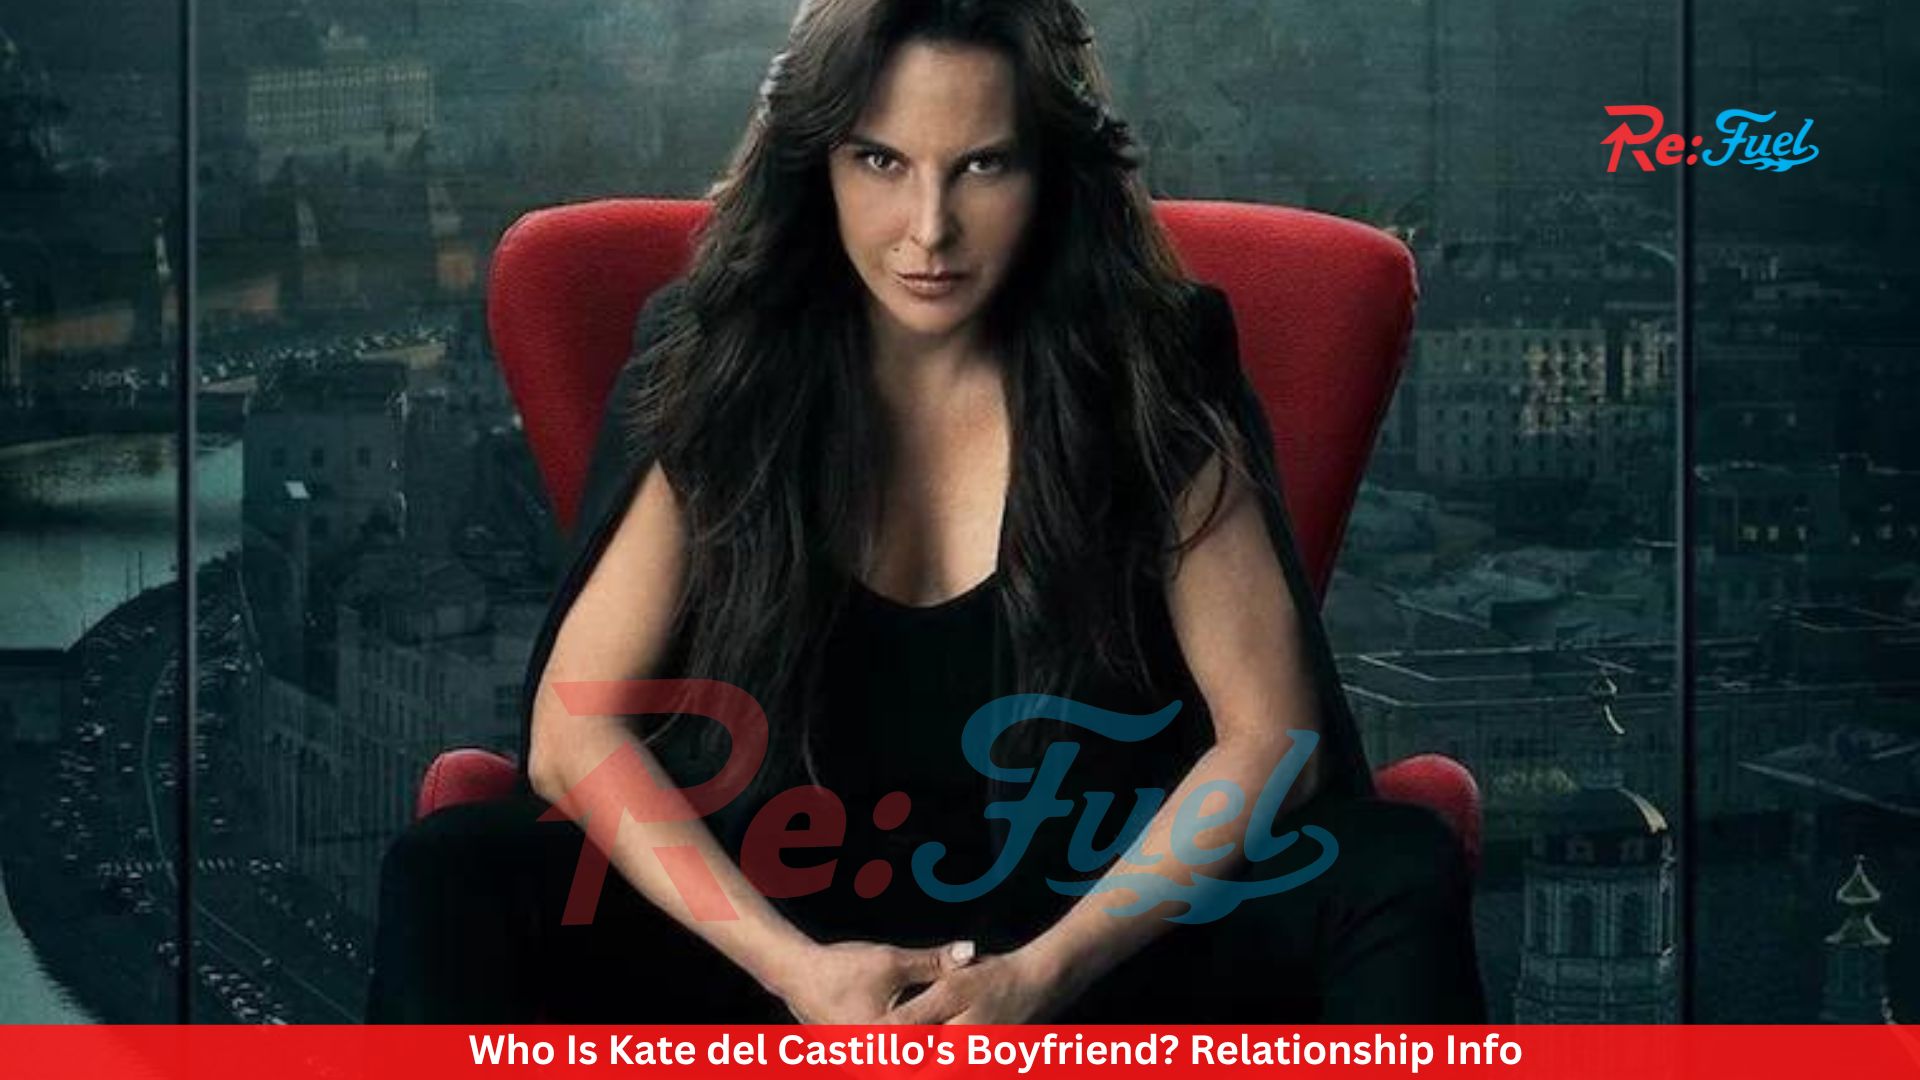 Who Is Kate del Castillo's Boyfriend? Relationship Info